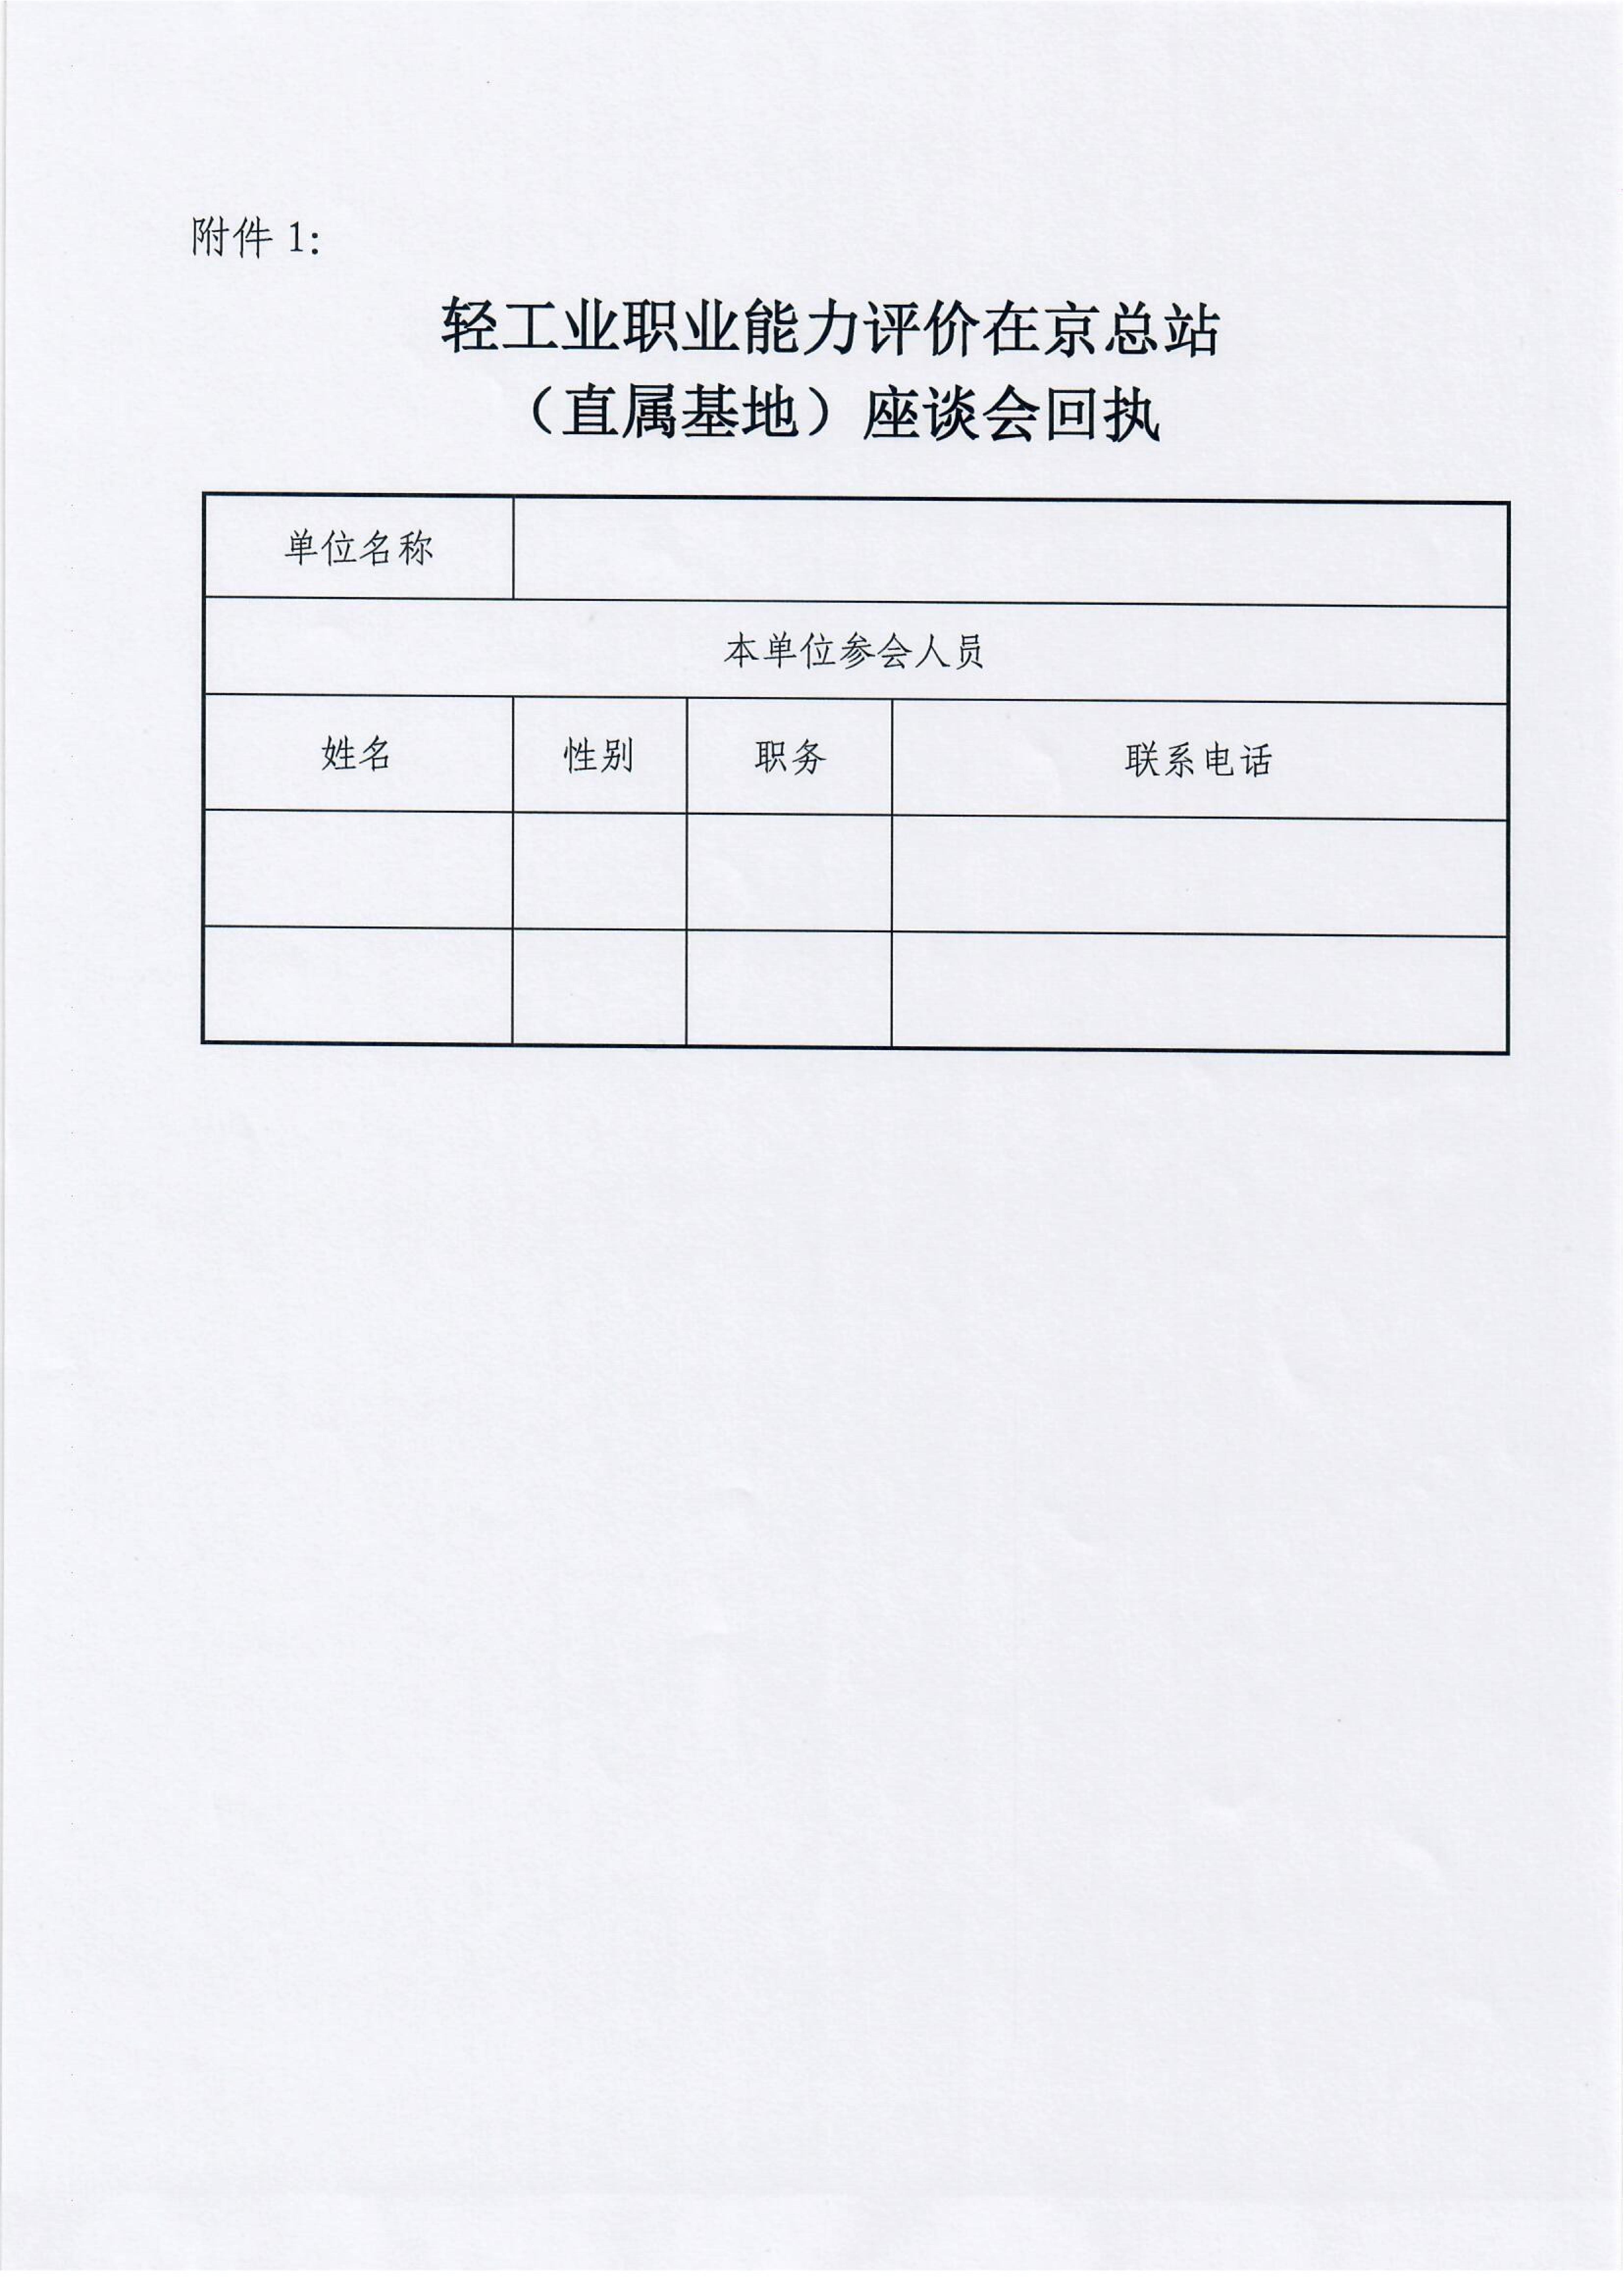 关于召开轻工业职业能力评价在京总站、直属基地座谈会的通知_02.jpg